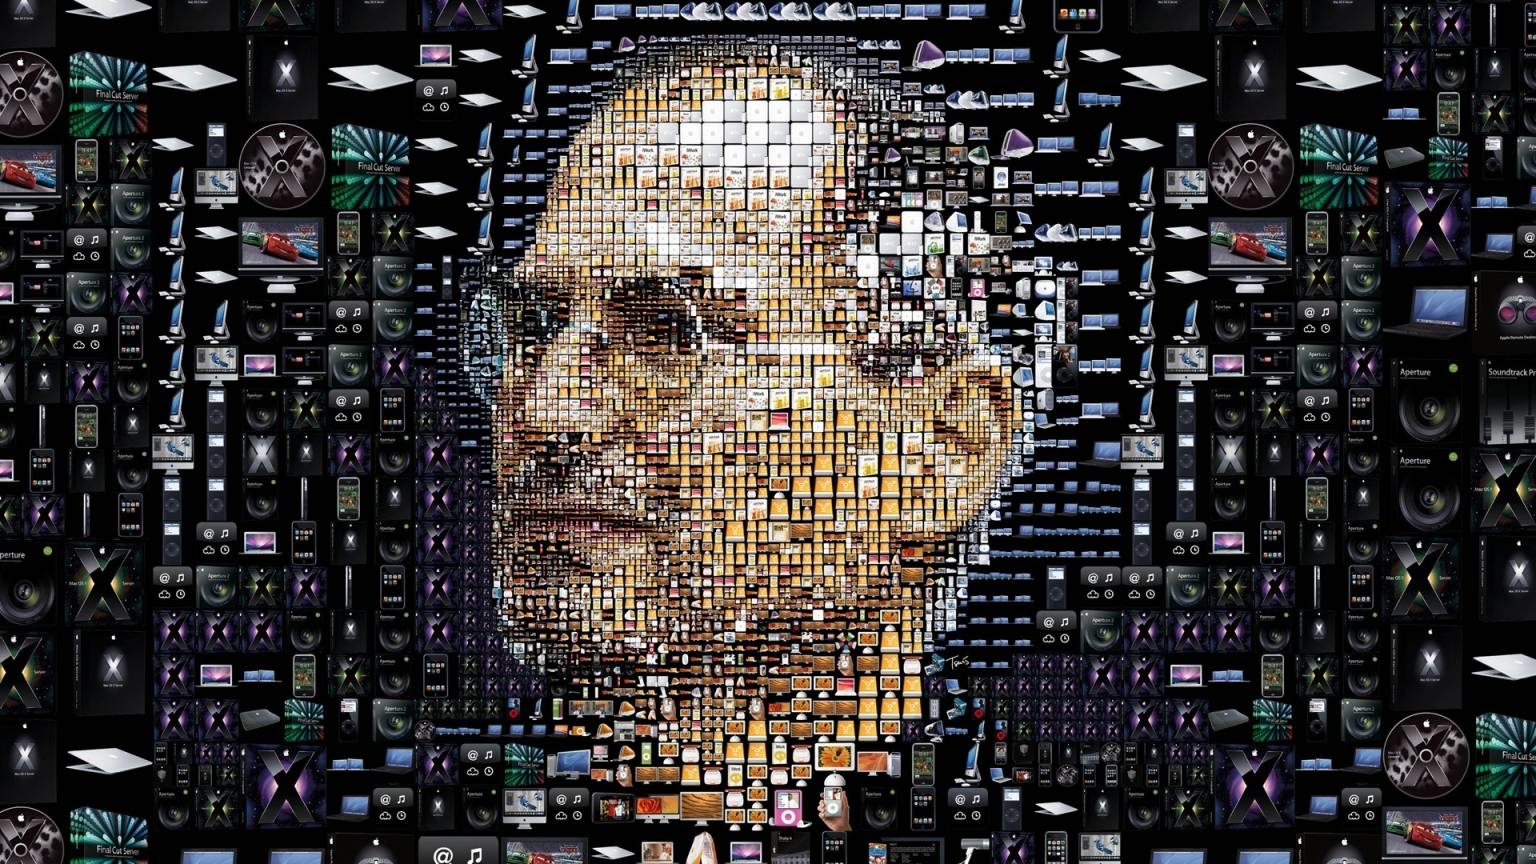 Steve Jobs for 1536 x 864 HDTV resolution